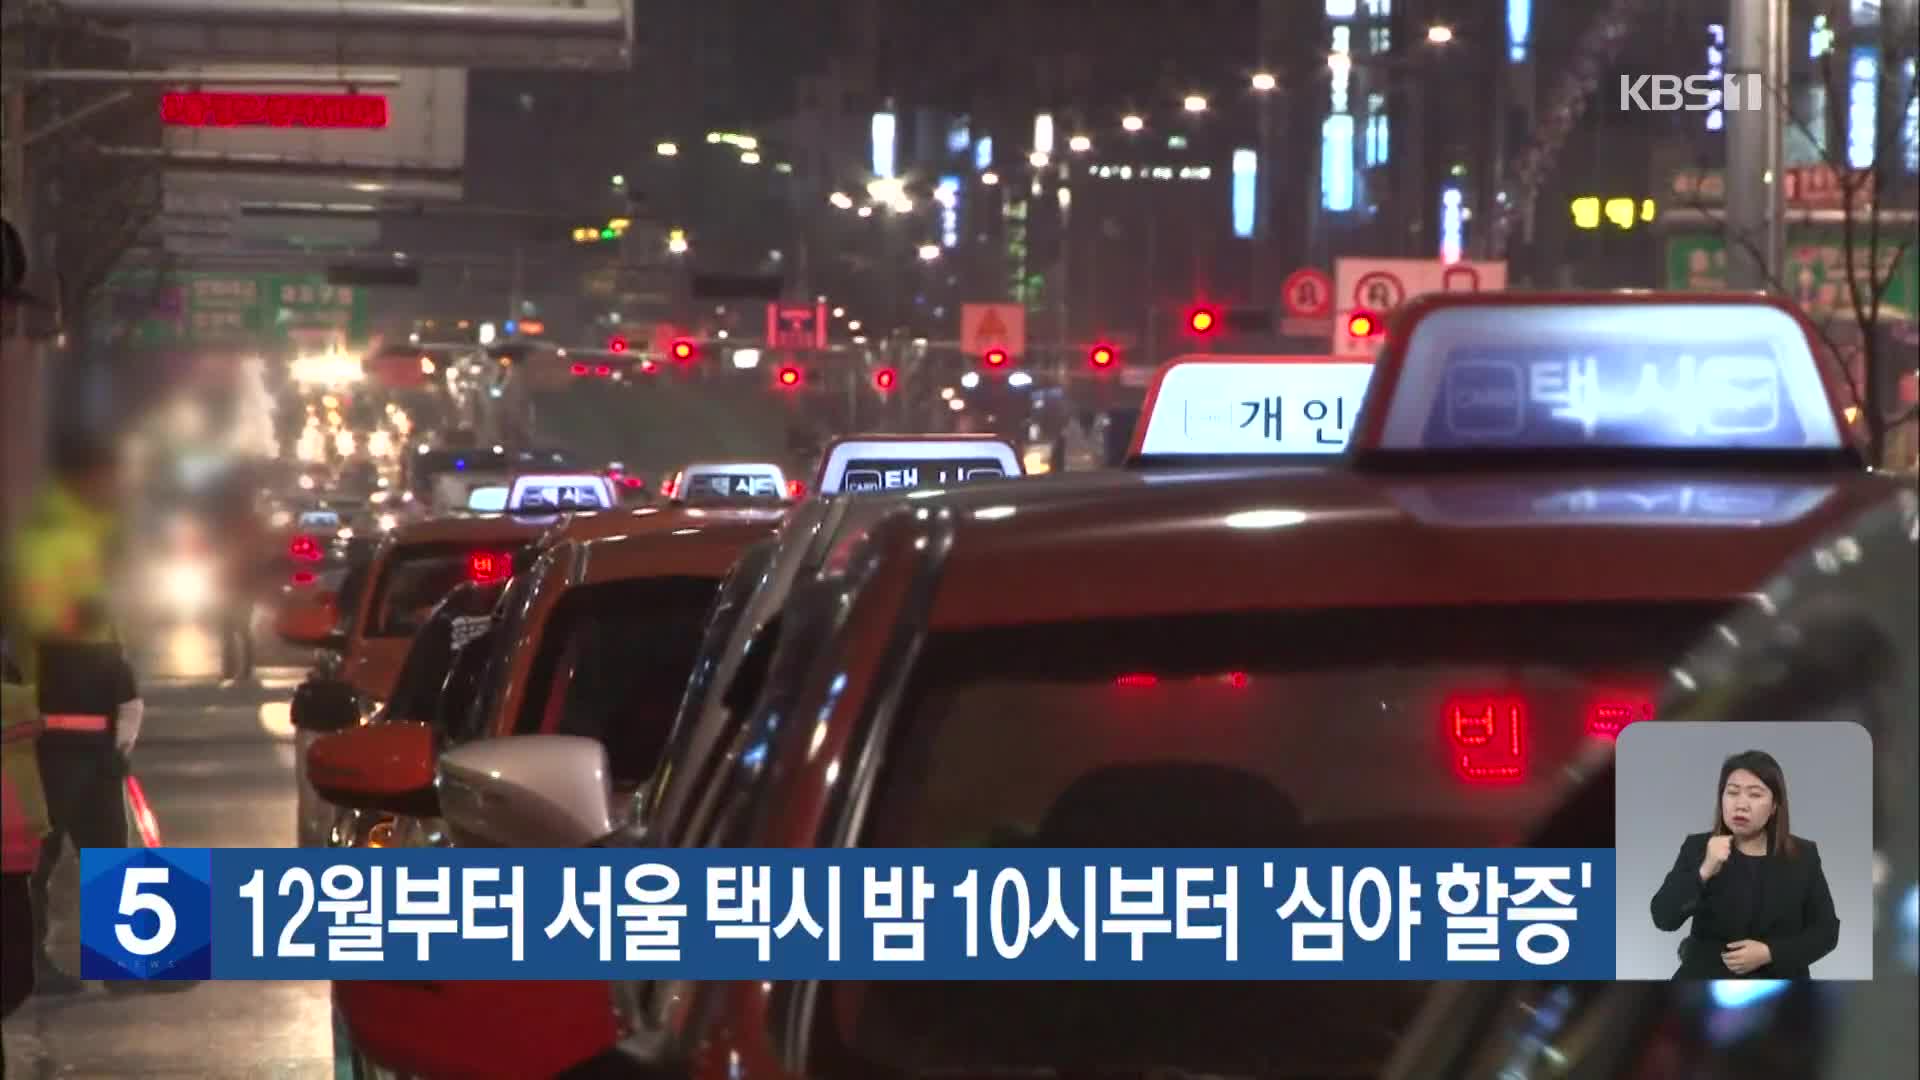 12월부터 서울 택시 밤 10시부터 ‘심야 할증’